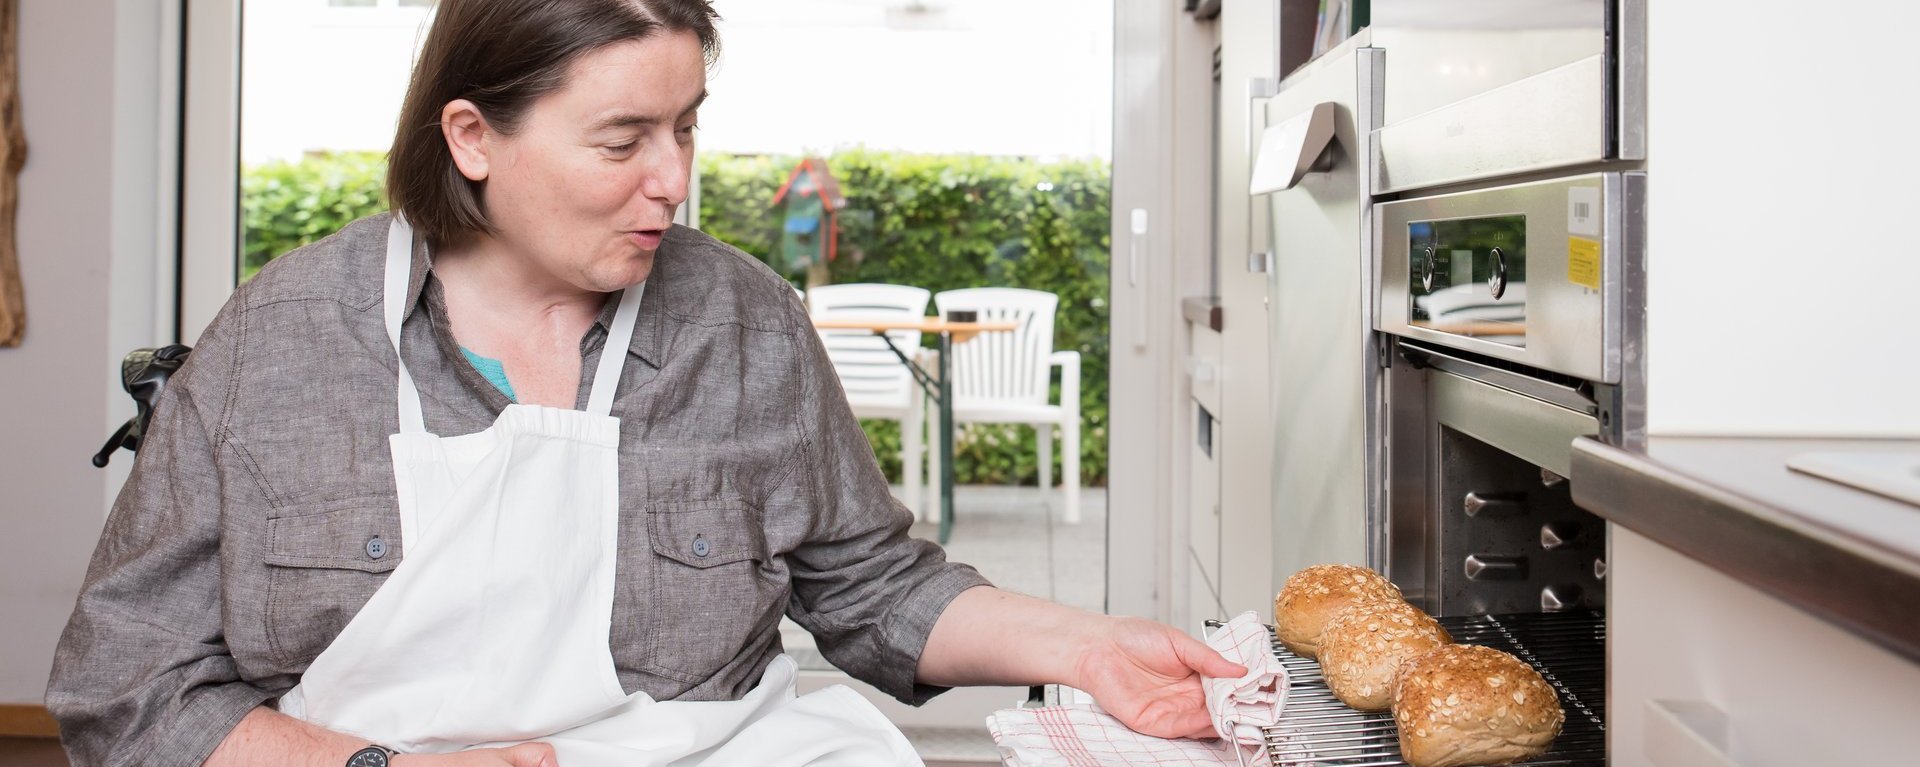 Eine Frau im Rollstuhl holt in einer Küche einen Backrost mit frischen Brötchen aus dem Ofen.